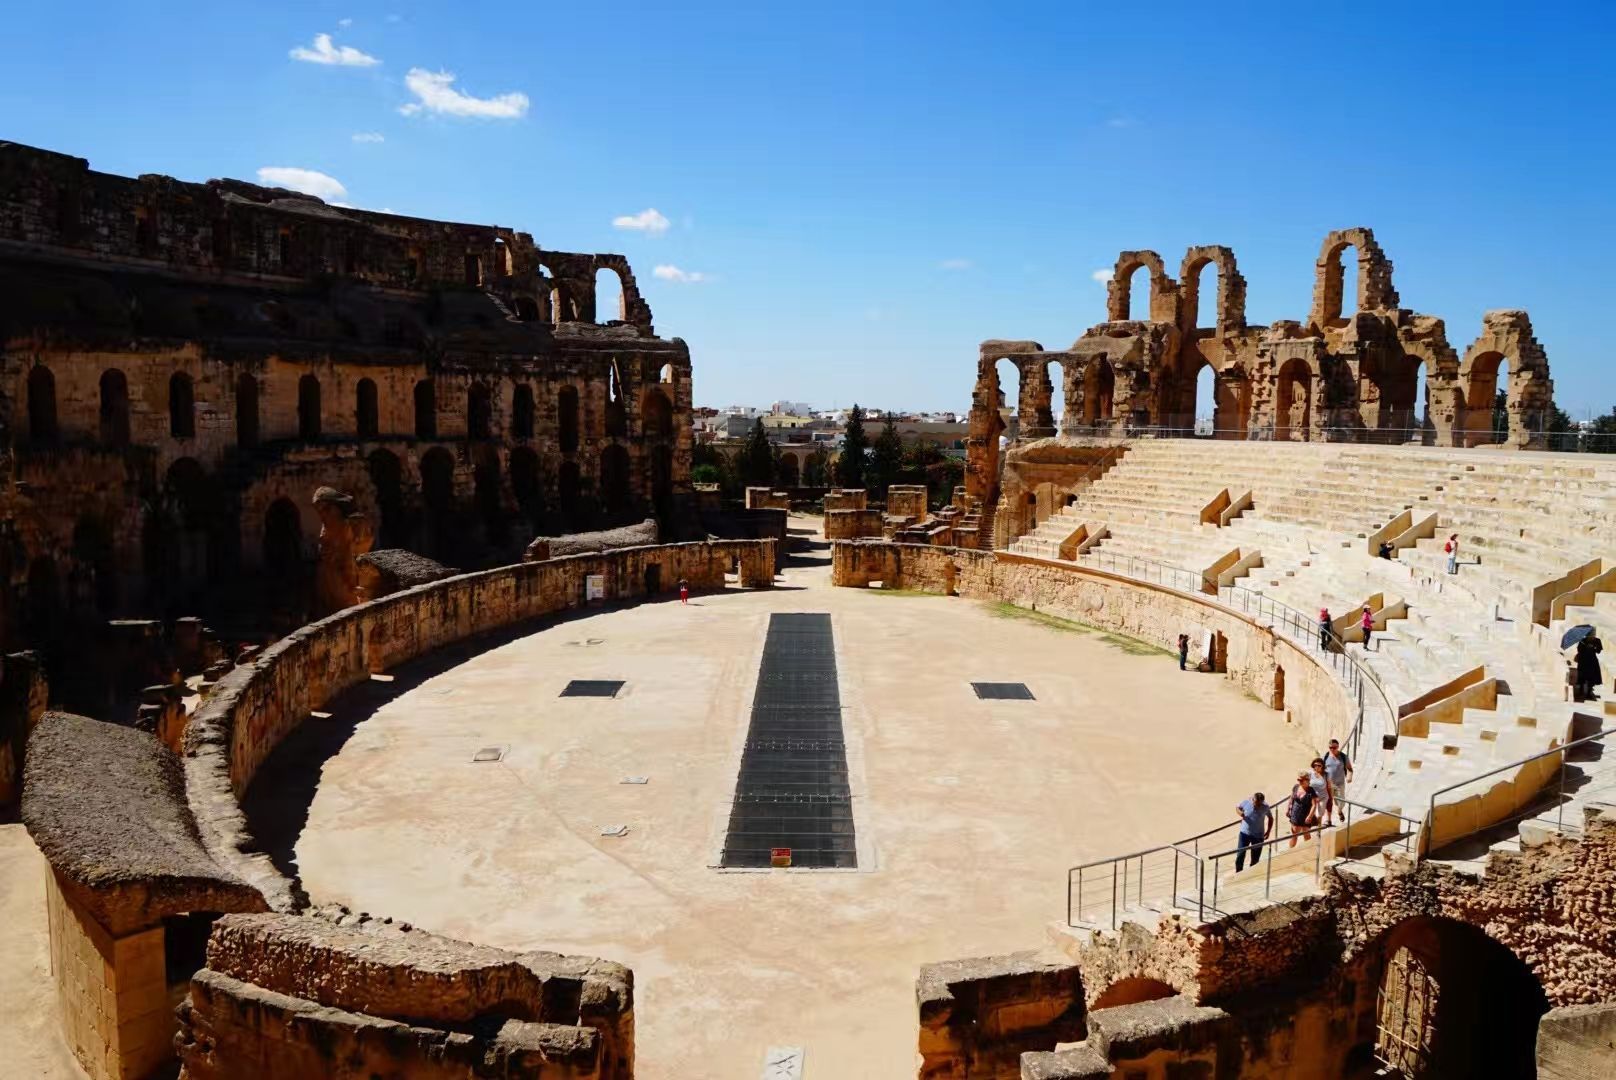 艾尔.杰姆斗兽场是世界上保存最完整的斗兽场。是古罗马帝国在非洲留下的一座著名的辉煌建筑。被描述为“世